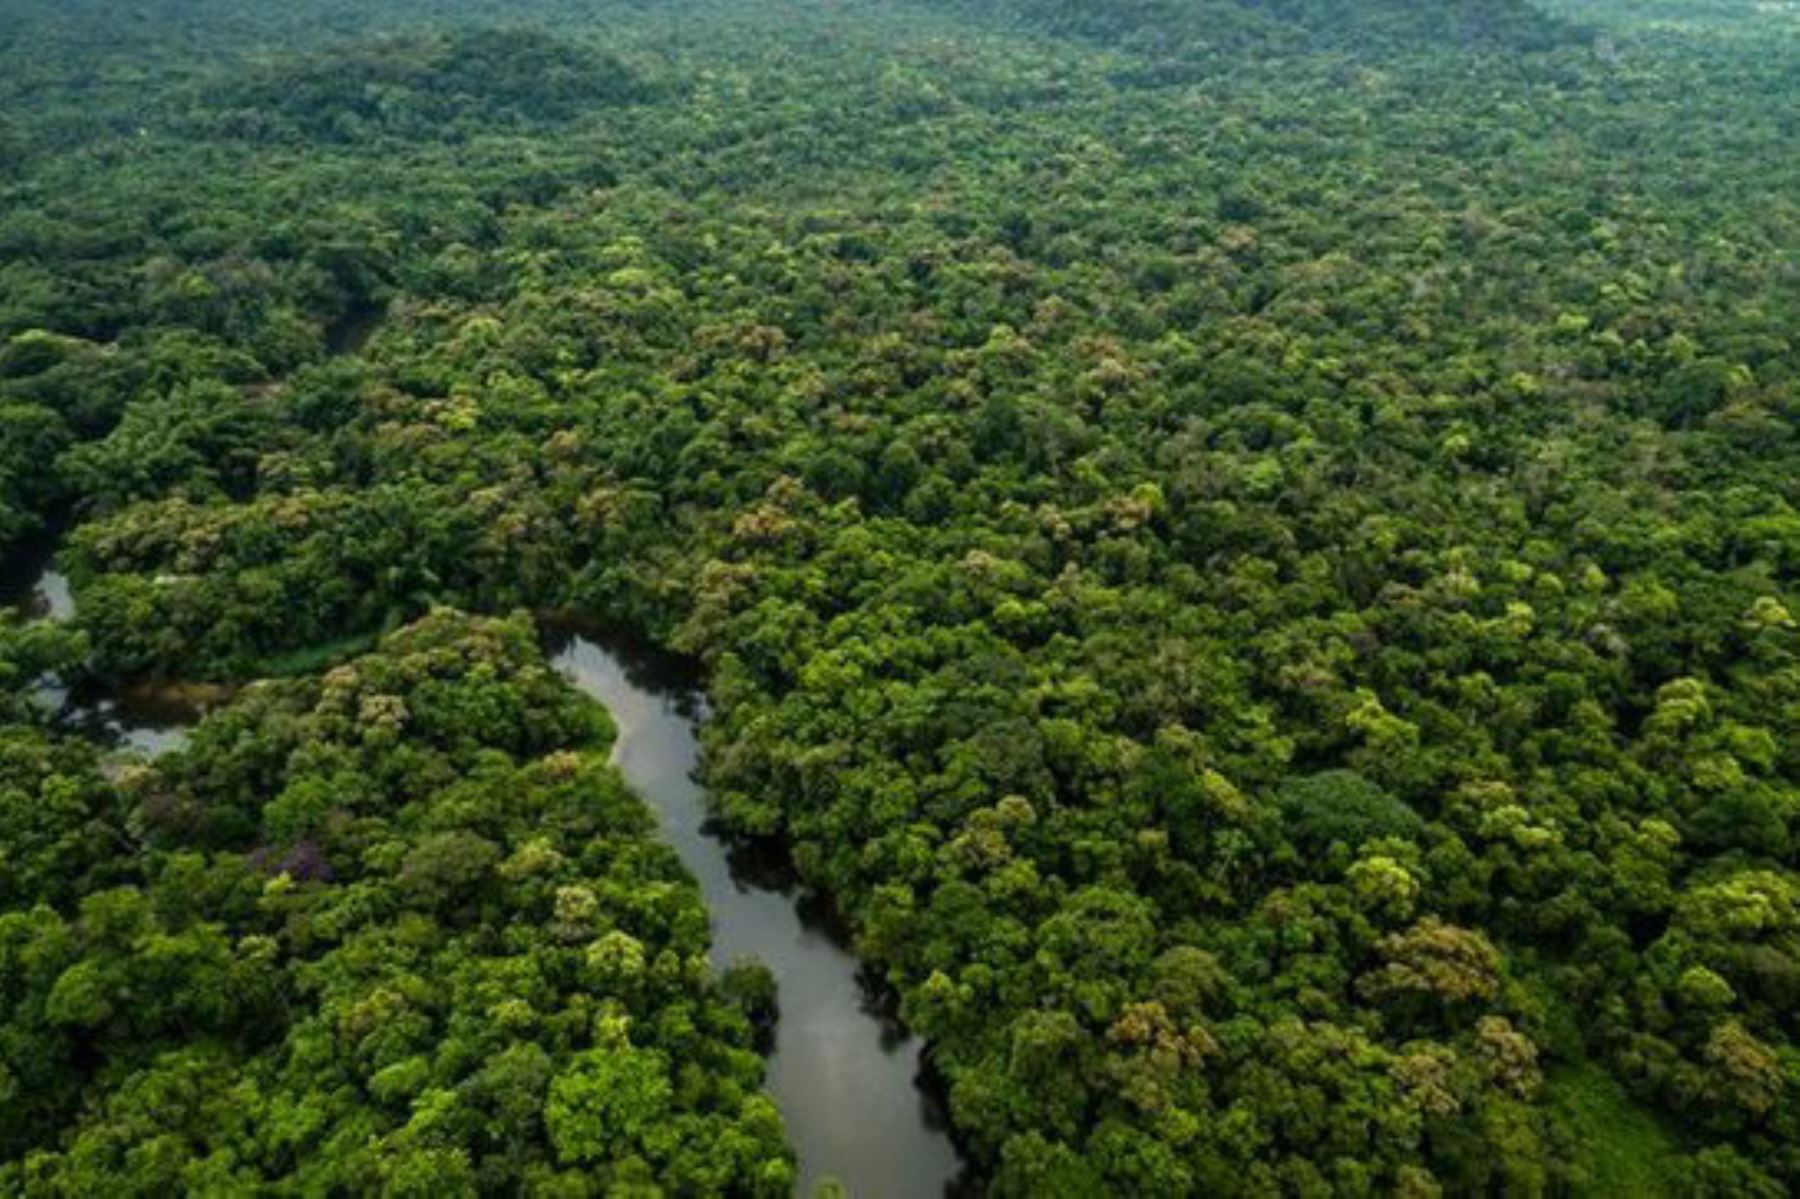 El Gobierno amplió por 20 años la vigencia del Programa Nacional de Conservación de Bosques para la Mitigación del Cambio Climático (PNCB), que era de diez años y vencía este 2020, de tal manera que su ejecución se prolongará hasta el año 2030. ANDINA/Difusión